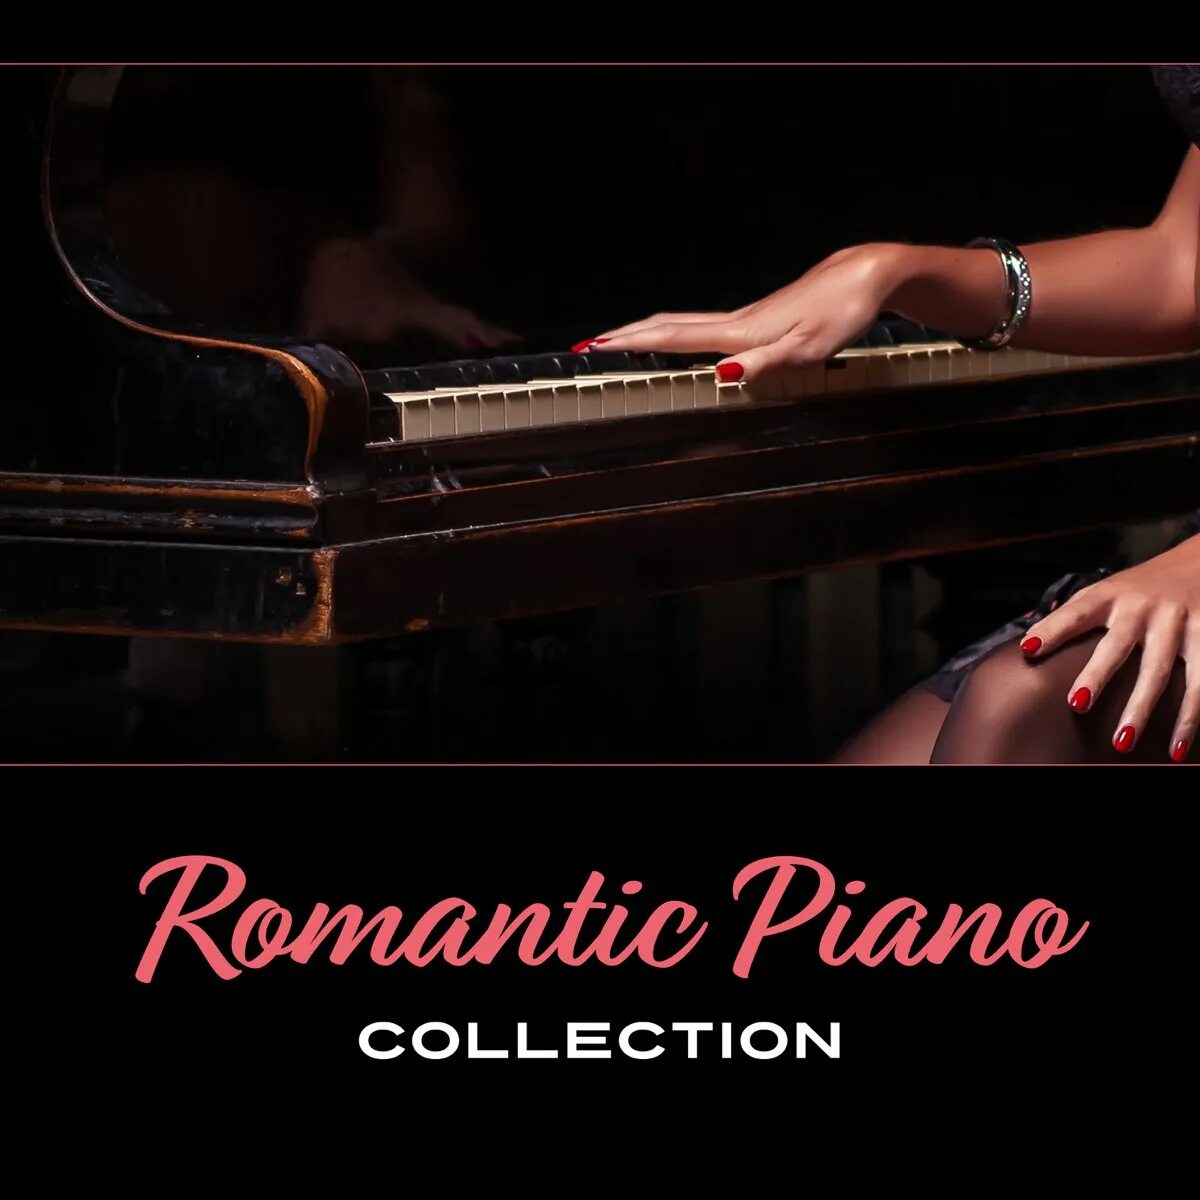 Романтик коллекшн. Romantic collection Piano collection. Romantic collection - Piano. Обложки альбомов с пианино. Инструментальная коллекция романтика.